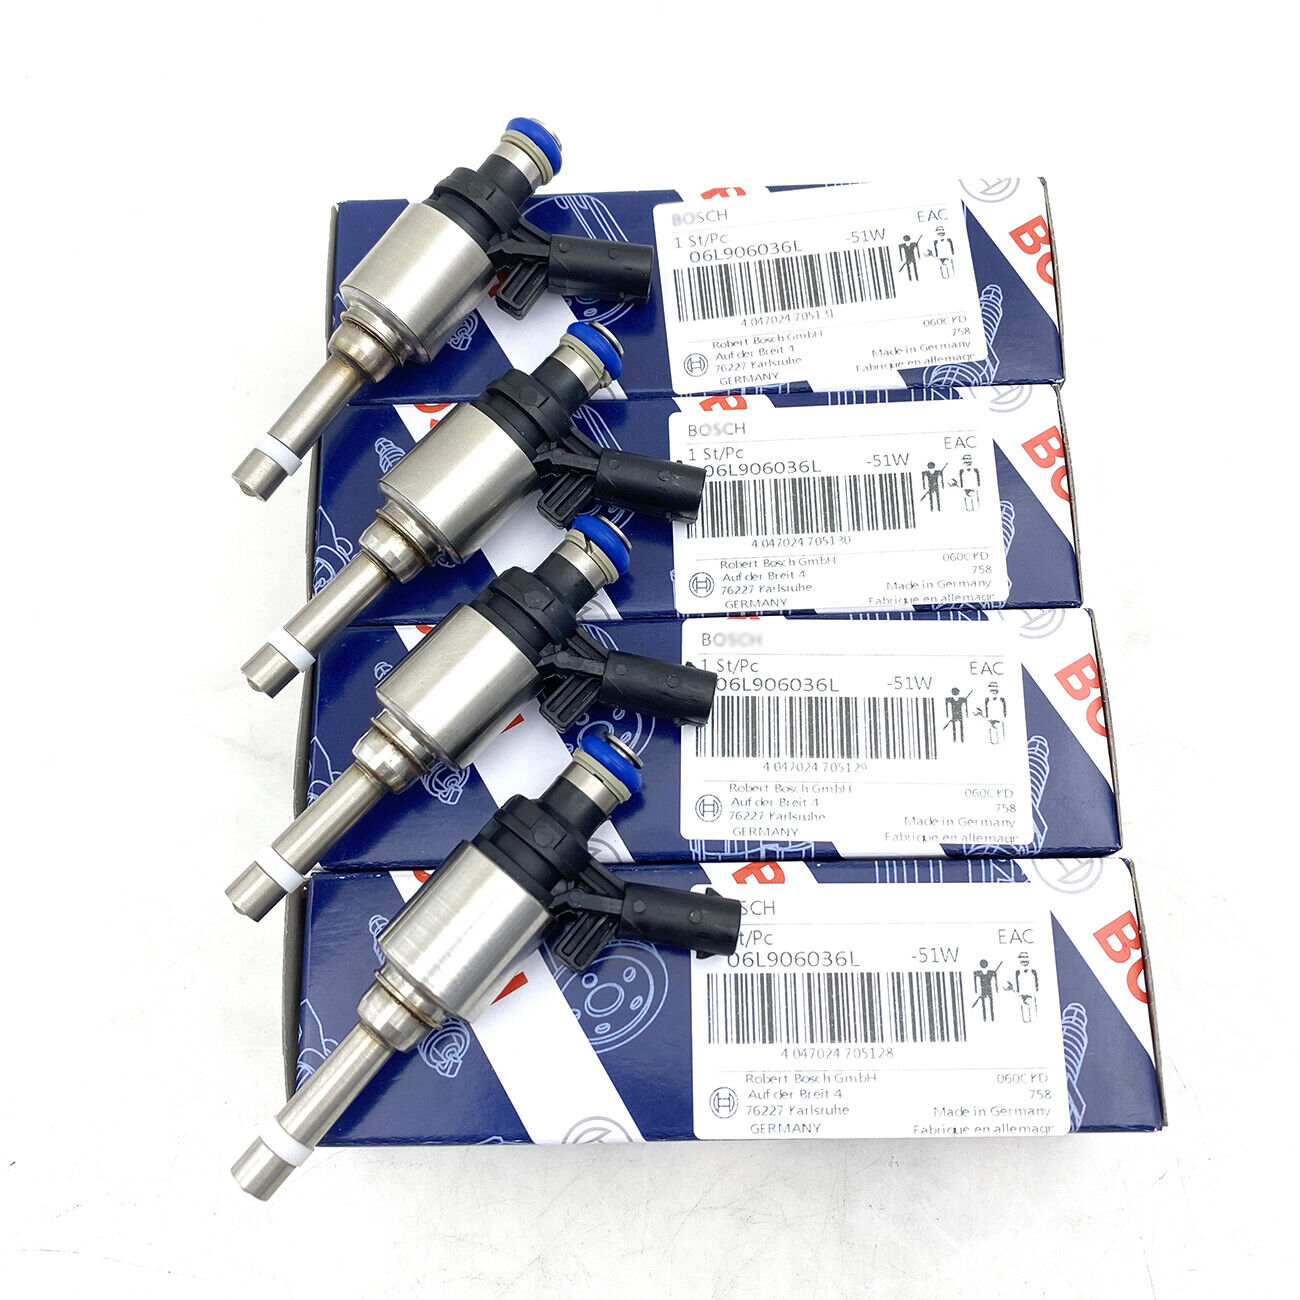 4pcs Fuel Injectors 06L906036L Fits for VW Golf Audi S3 TTS 2.0 TFSI NEW Bosch